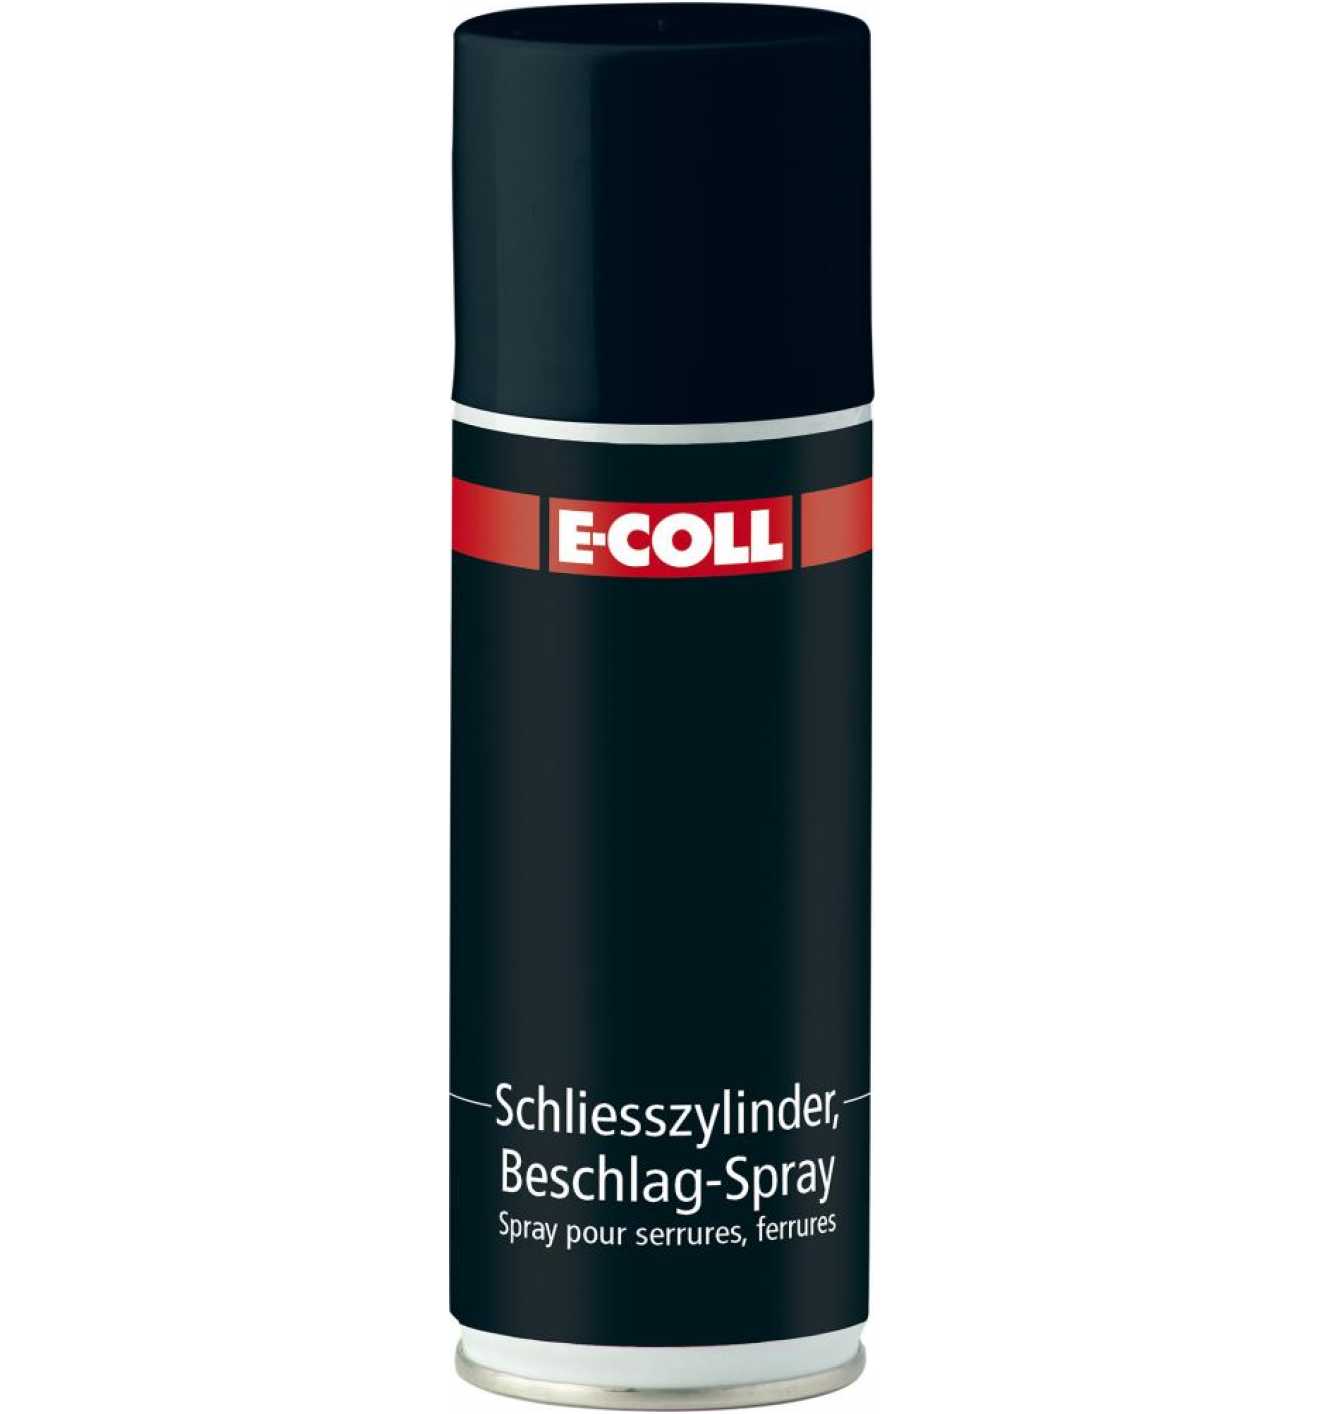 E-COLL Schließzylinder- und Beschlagspray 200 ml - bei  online  kaufen